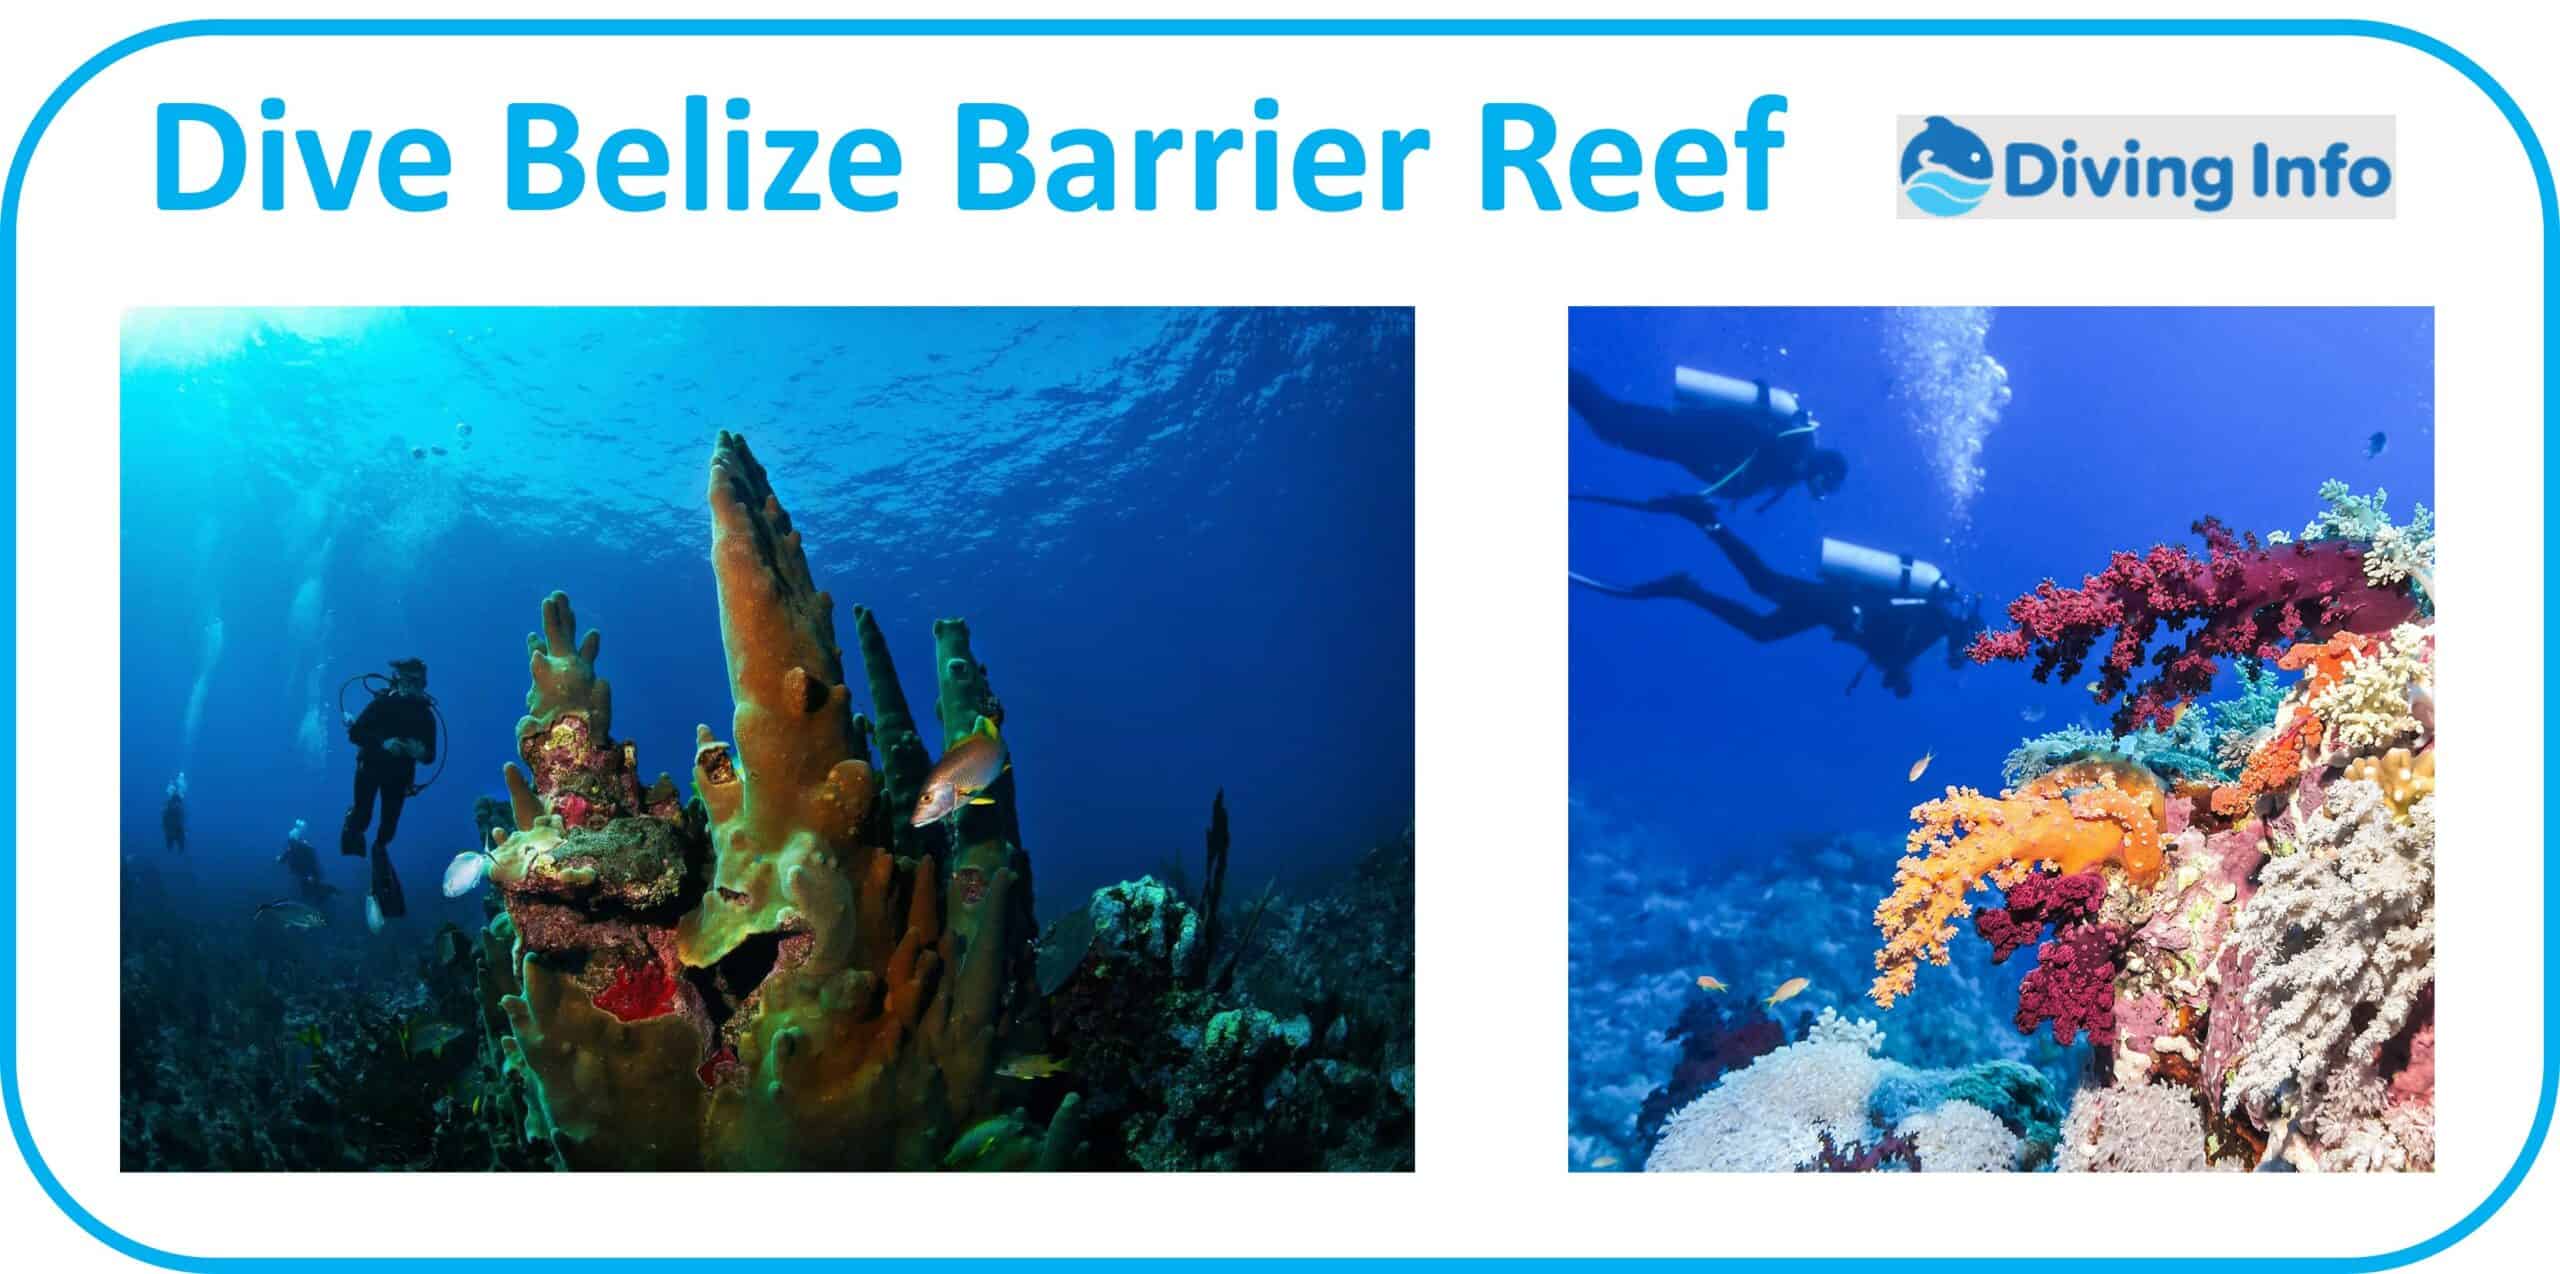 Dive Belize Barrier Reef